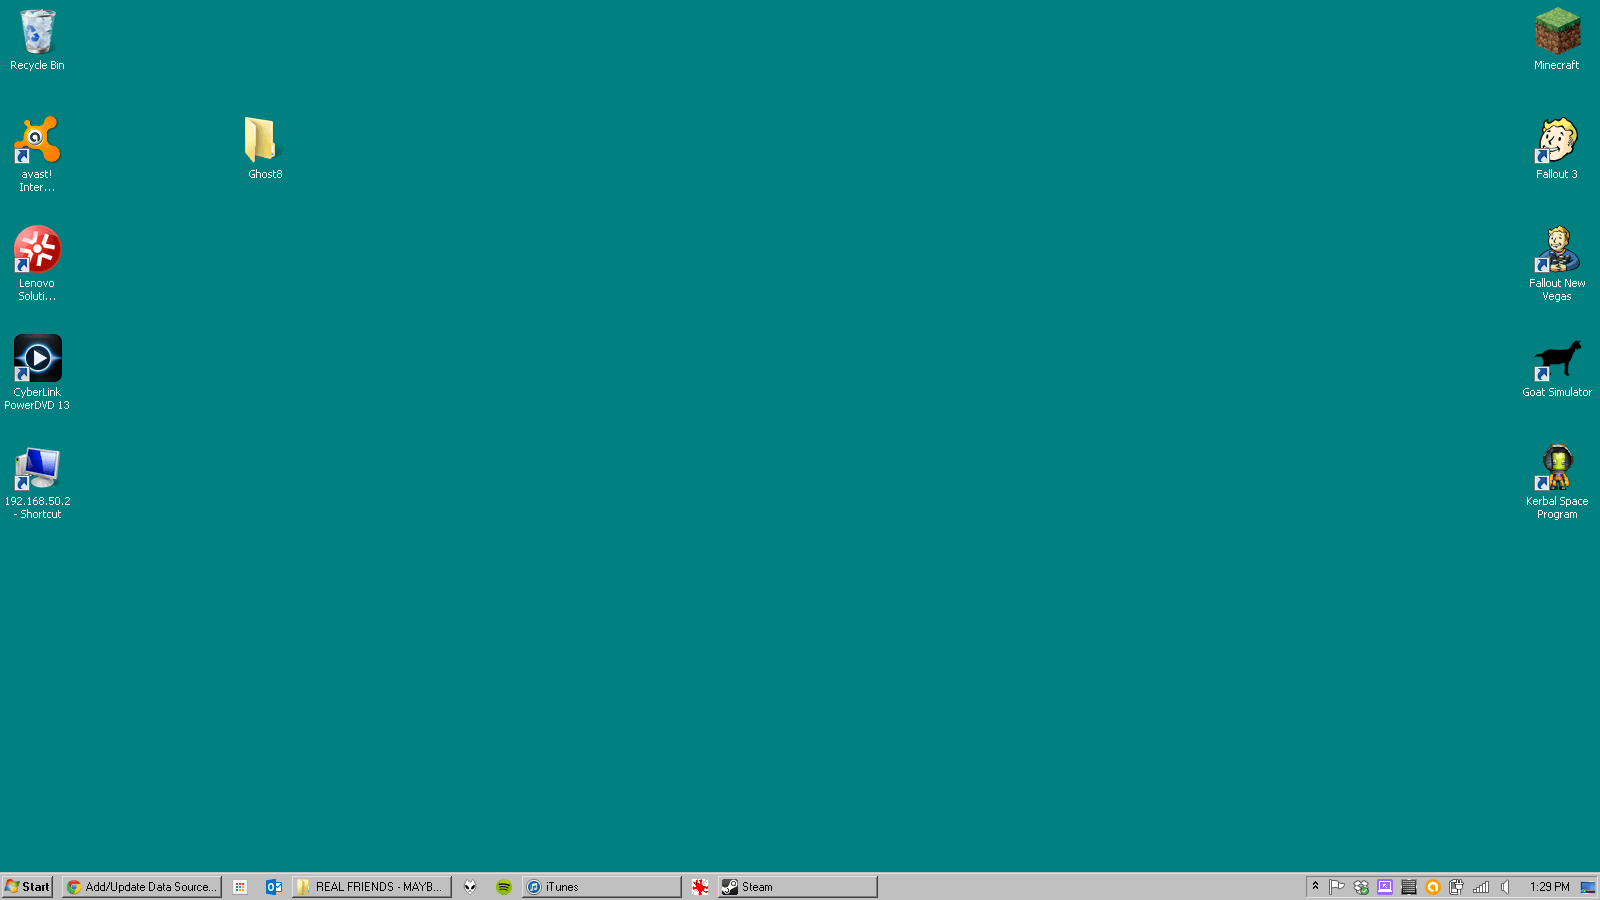 Hình nền chuẩn của Windows 95, WallpaperDog: Xem ngay bộ sưu tập các hình nền chuẩn được cung cấp bởi WallpaperDog. Với nhiều tùy chọn để lựa chọn, bạn có thể tìm thấy hình ảnh yêu thích của mình và tái hiện lại cảm giác sử dụng Windows